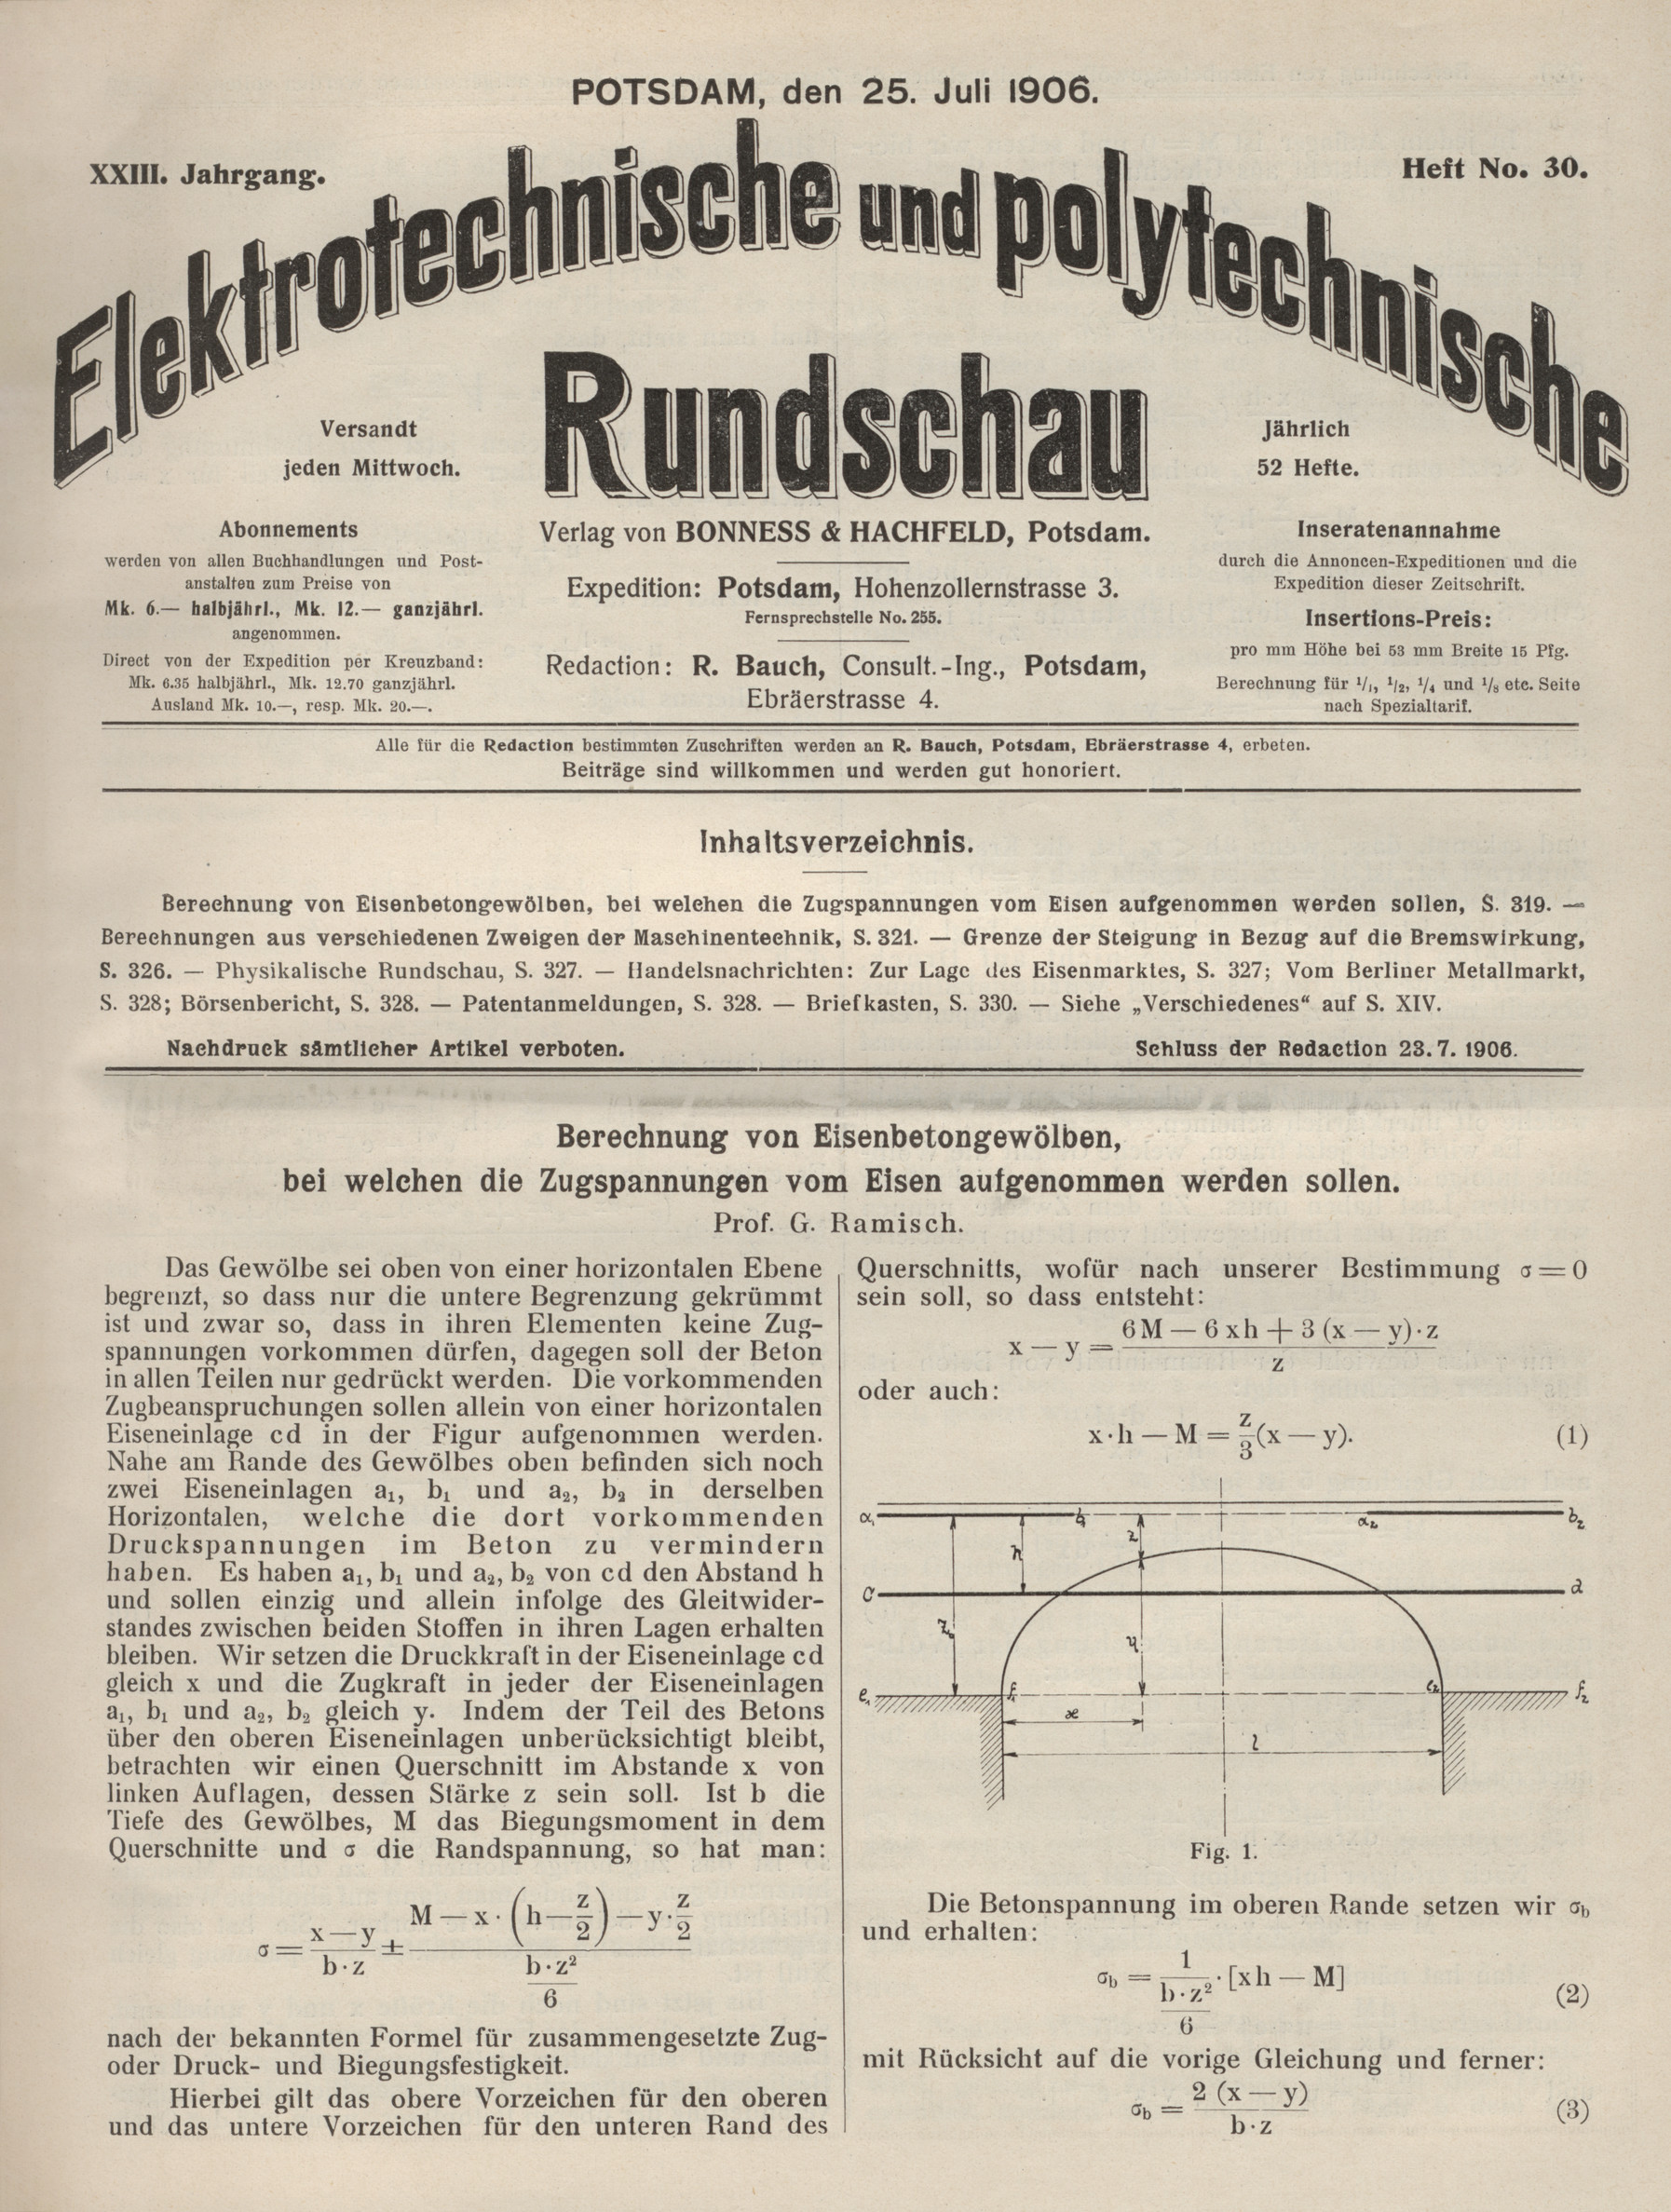 Elektrotechnische und polytechnische Rundschau, XXIII. Jahrgang, Heft No. 30